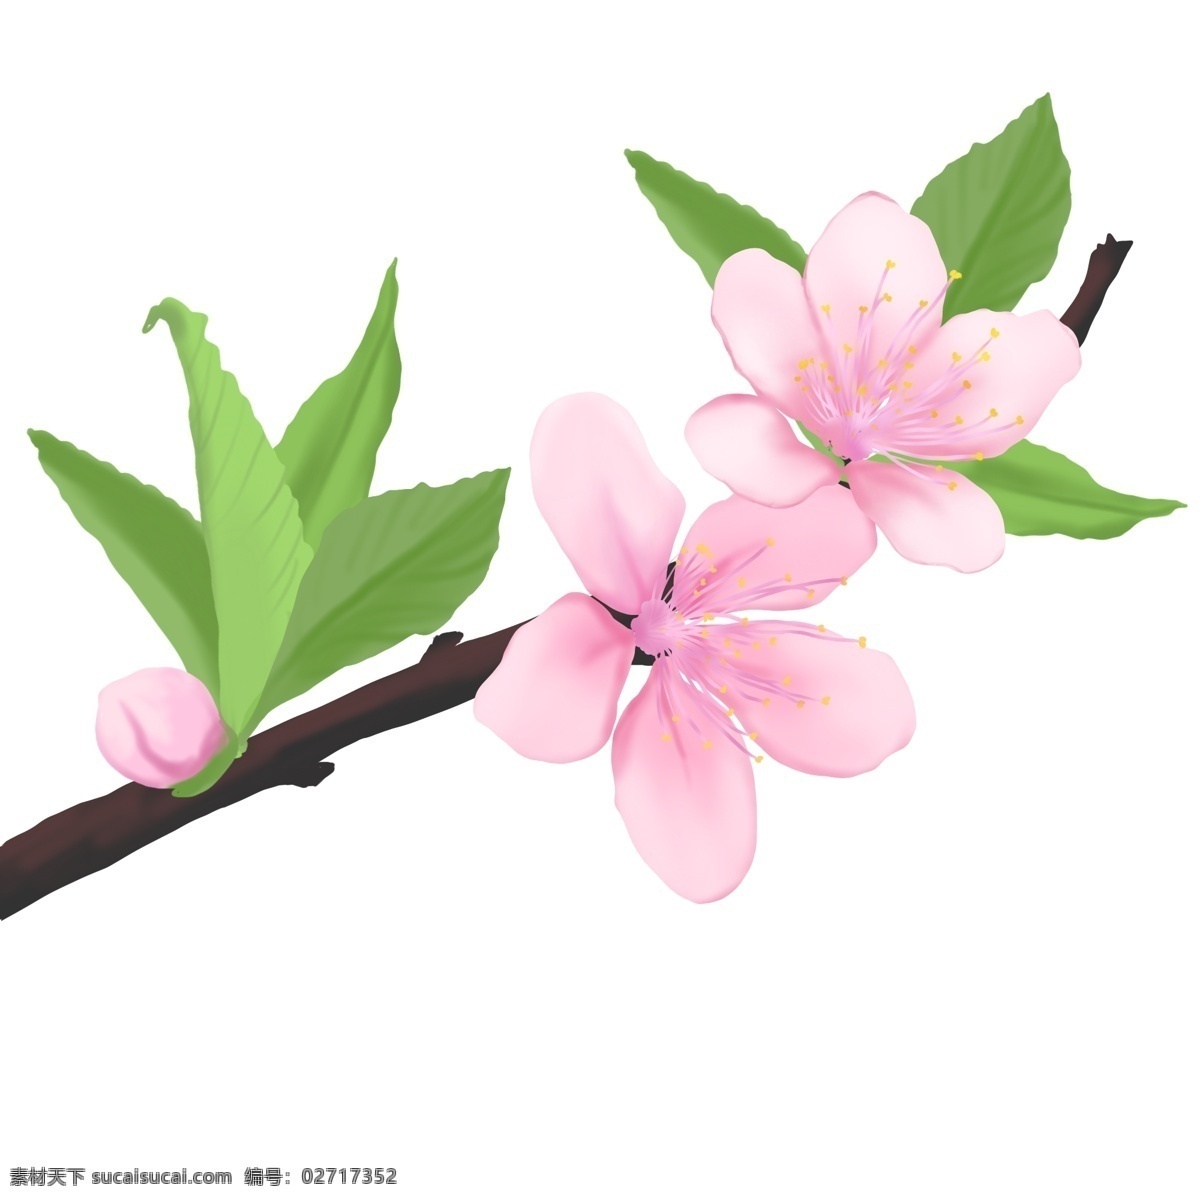 植物 花 类 桃花 春天 盛开 花类 果实花朵 灿烂 叶子 装饰 雅致 高清图 免扣图 手绘